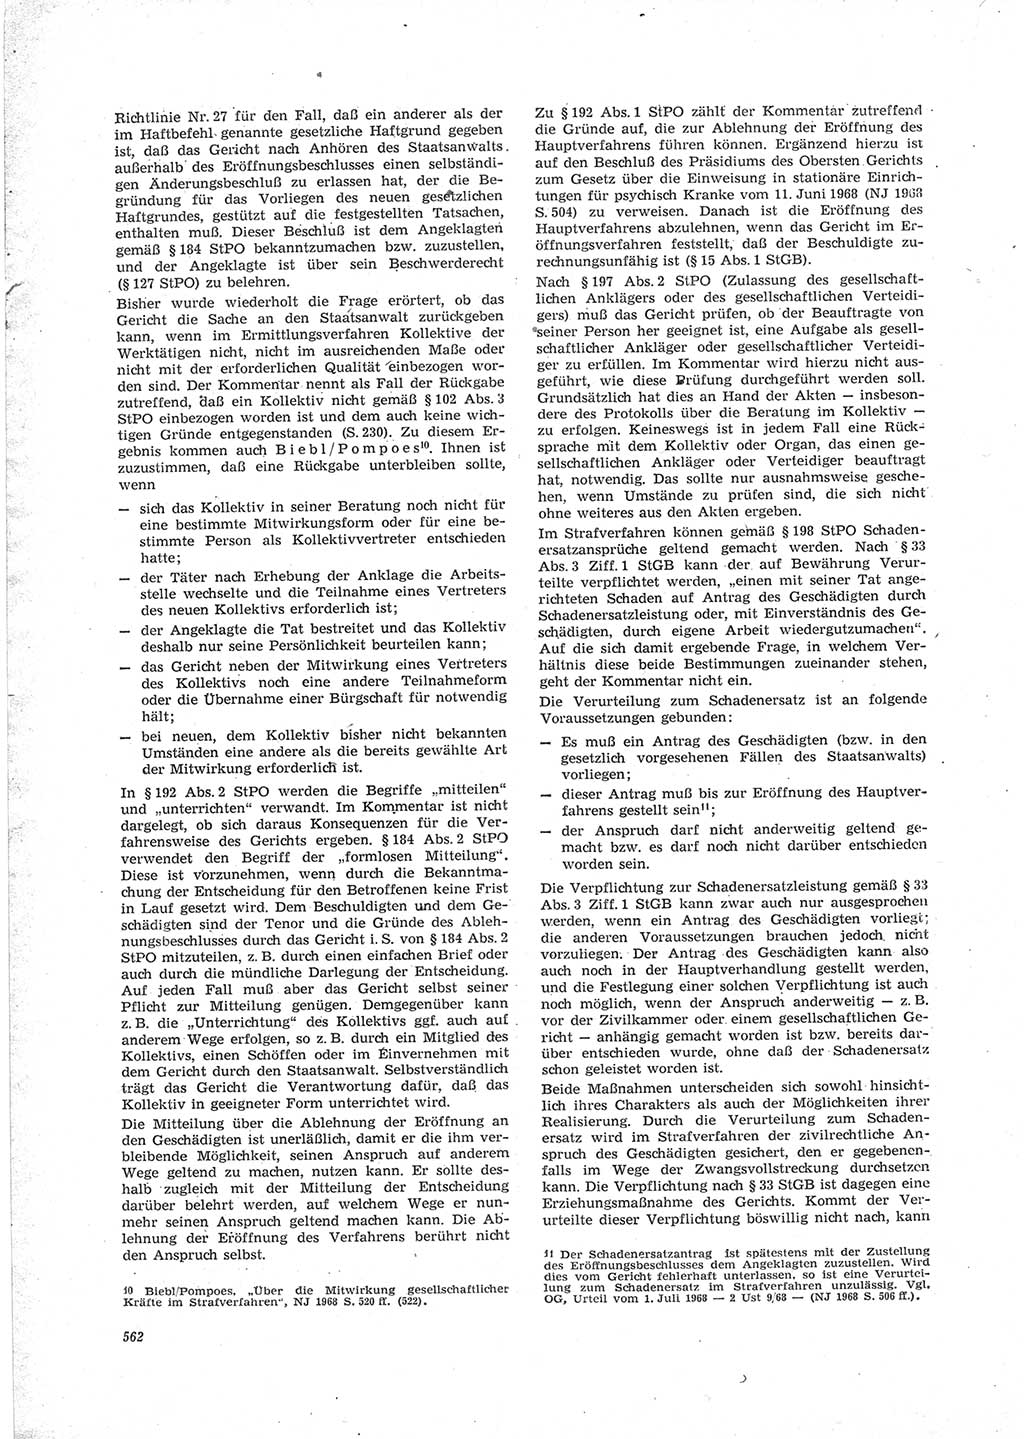 Neue Justiz (NJ), Zeitschrift für Recht und Rechtswissenschaft [Deutsche Demokratische Republik (DDR)], 23. Jahrgang 1969, Seite 562 (NJ DDR 1969, S. 562)